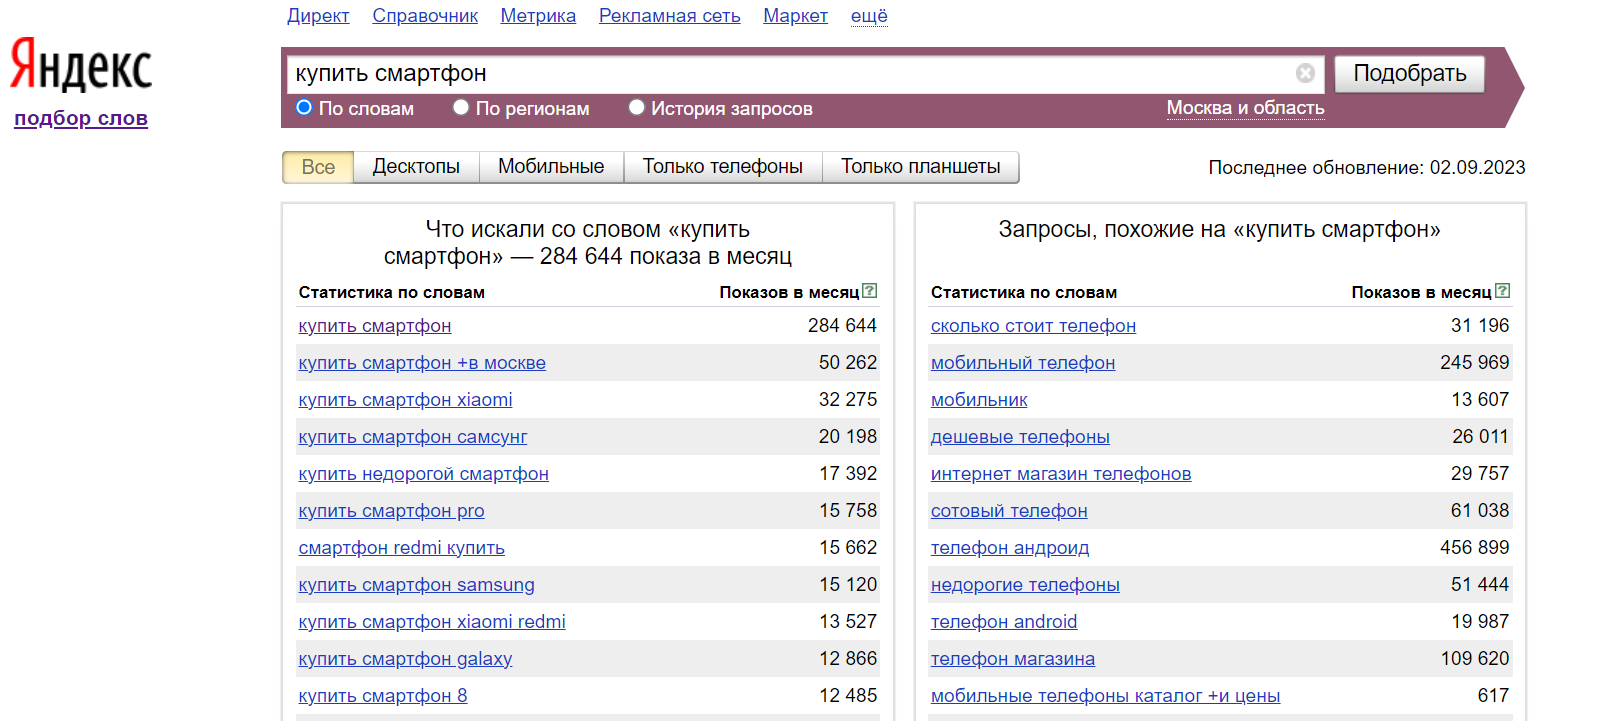 Подбор ключевых слов. Подобрать ключевые слова для сайта. Запросы в Яндексе по словам.